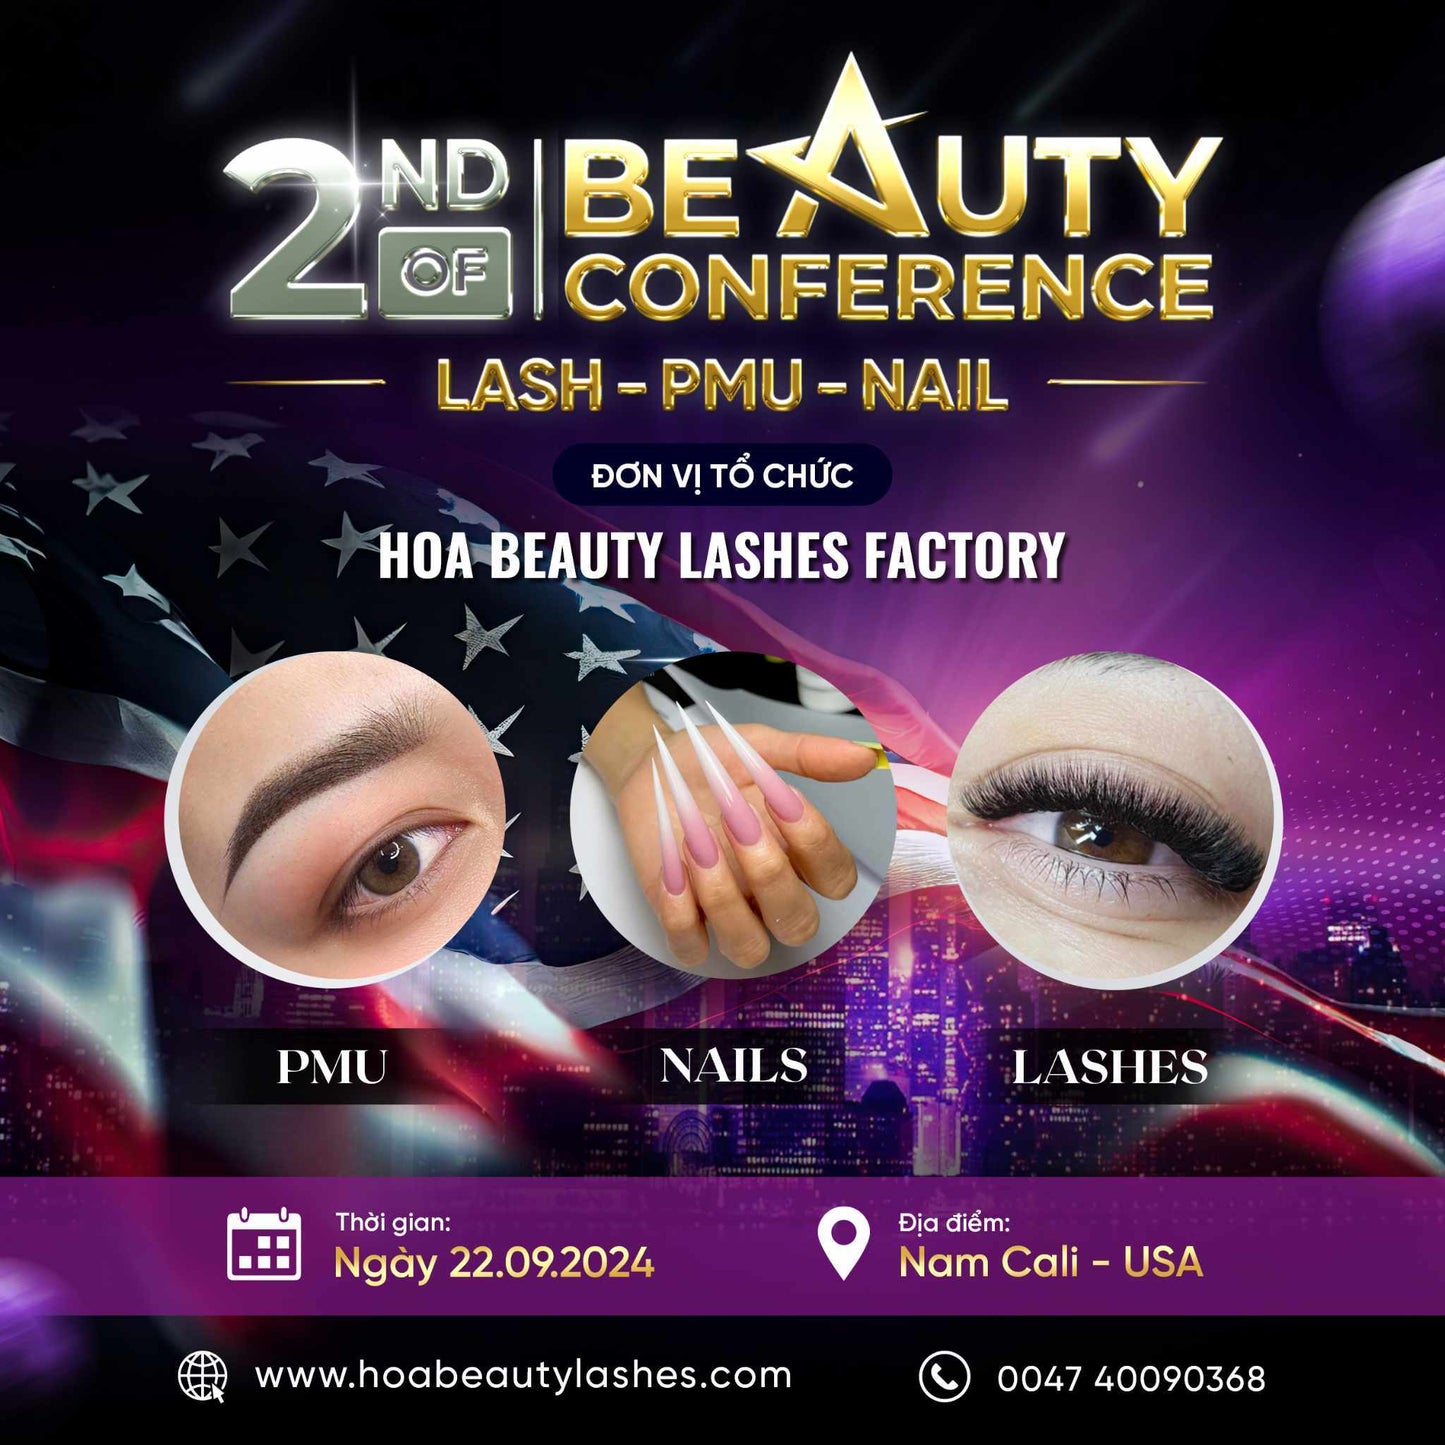 Vé hội thảo ngành Nails - Lashes - P.M.U - Skincare tại USA